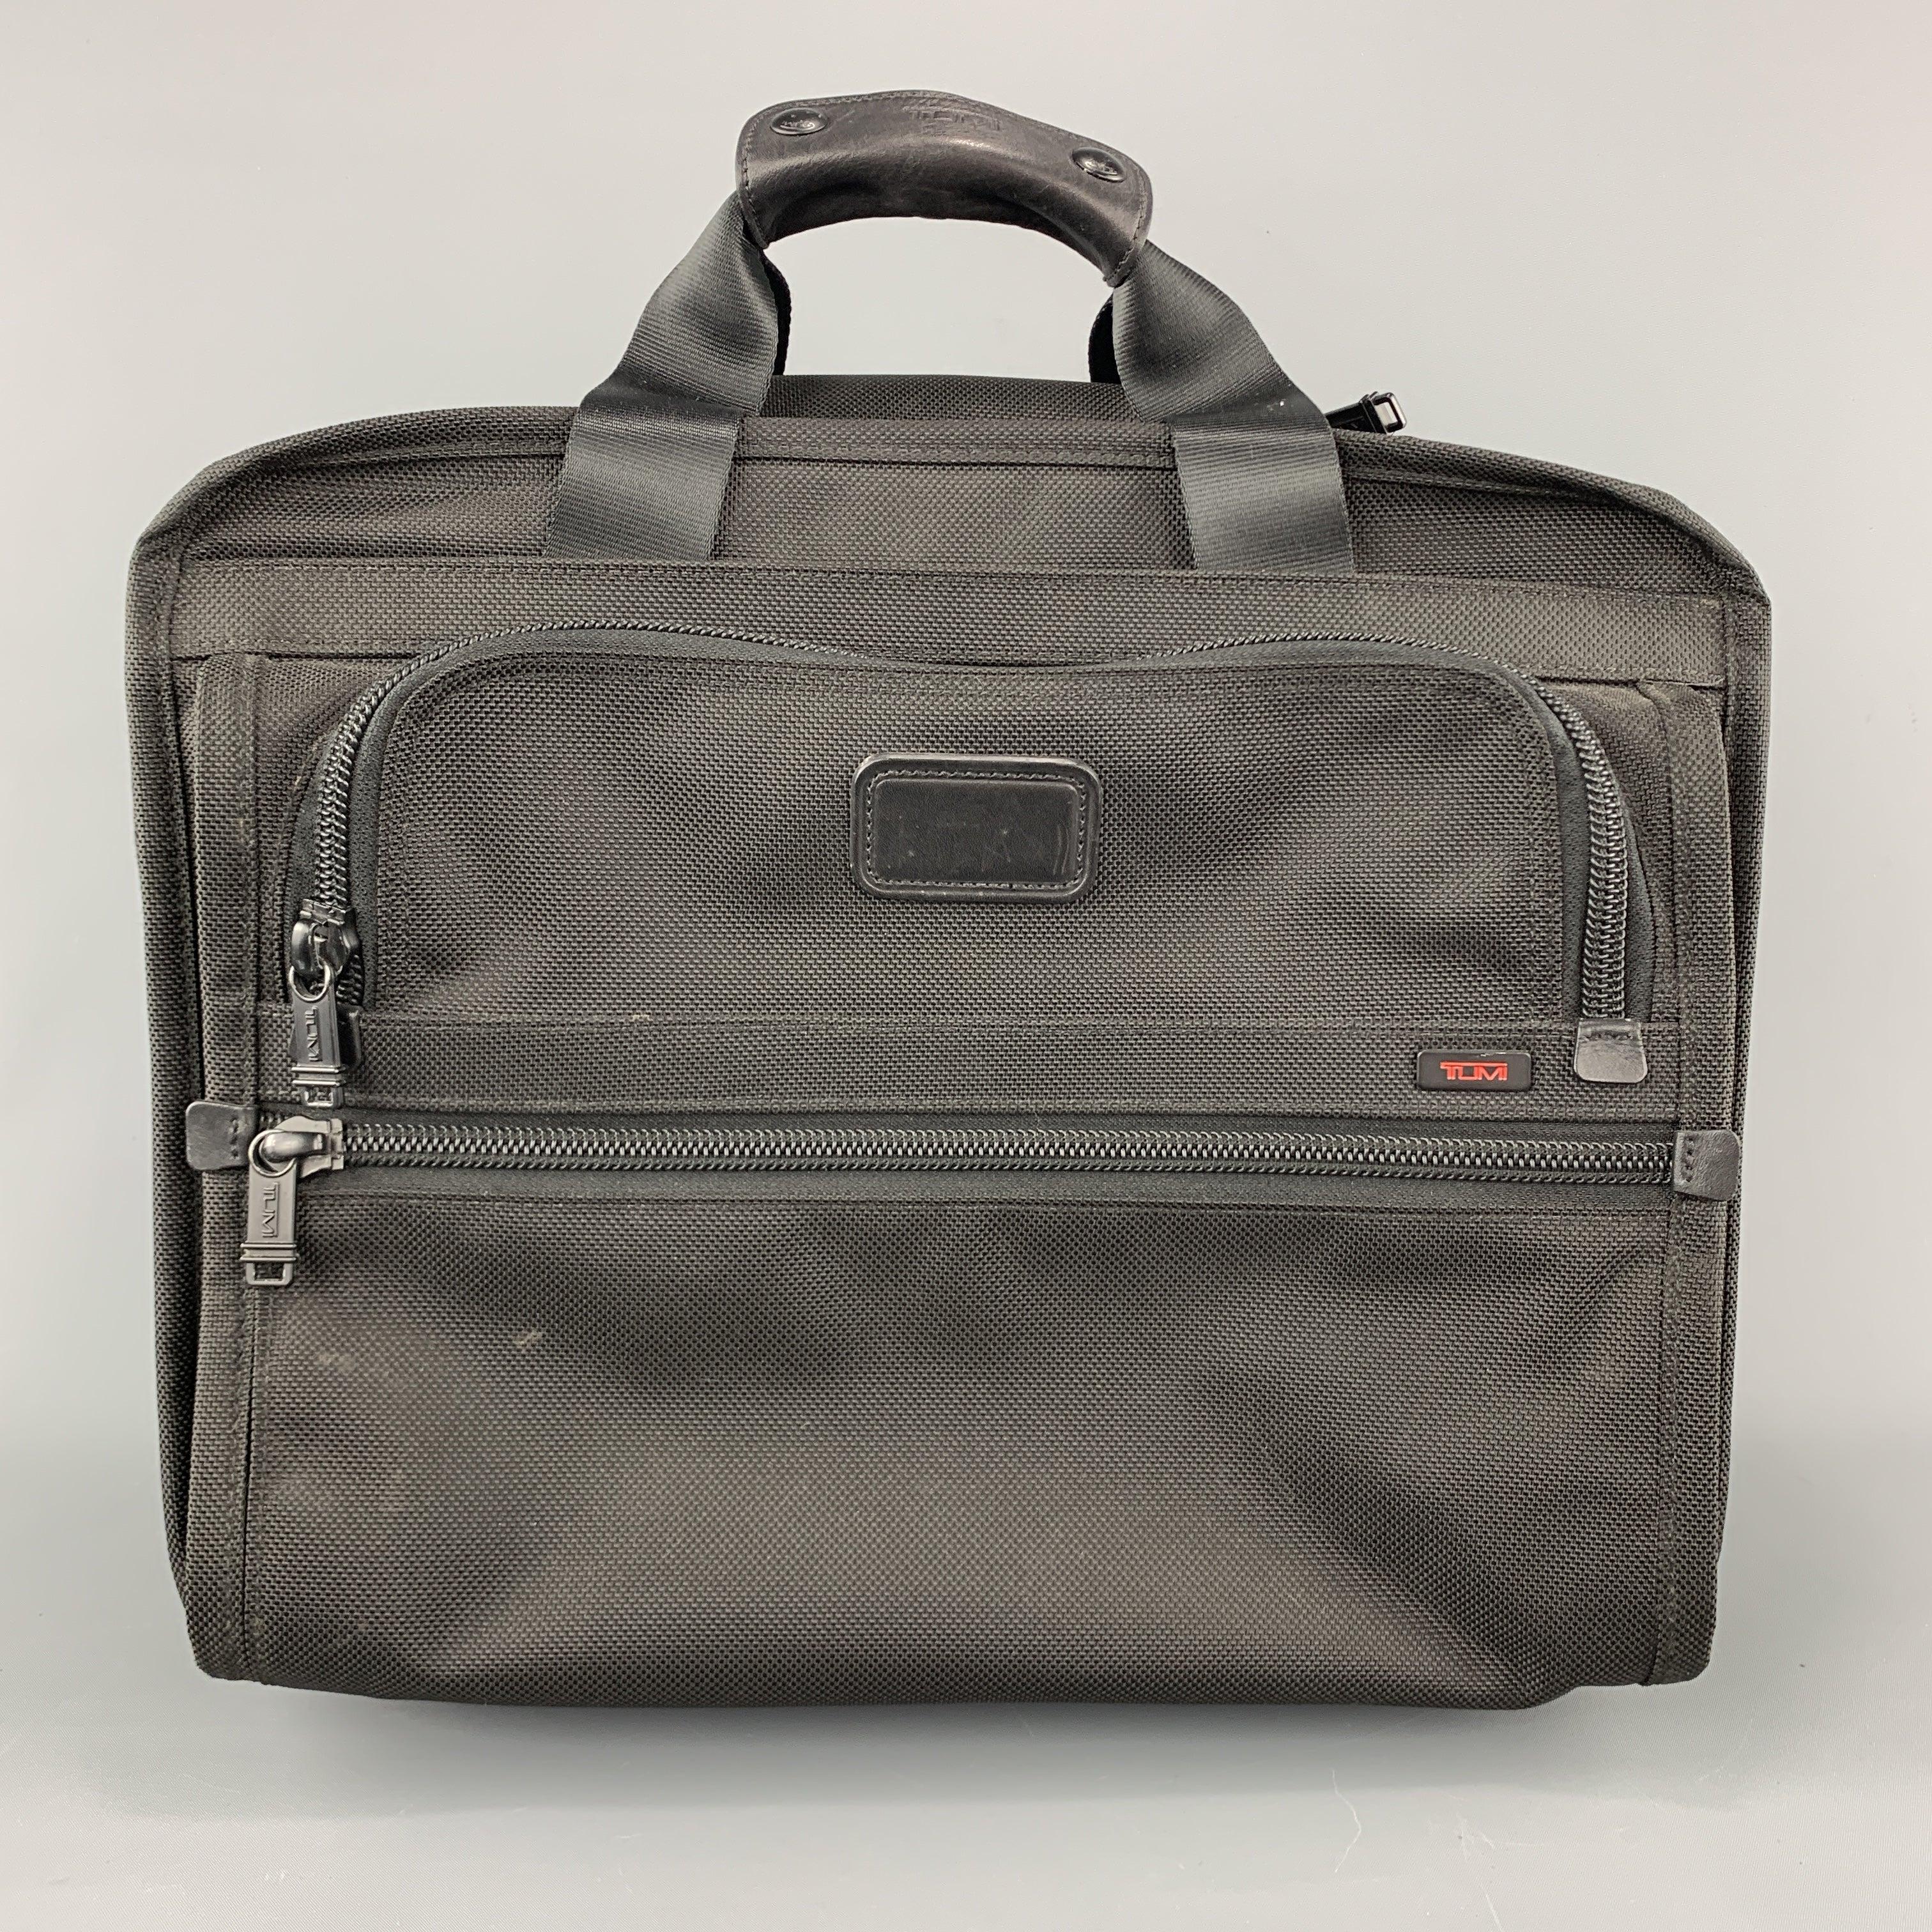 TUMI-Rollkoffer aus schwarzem Nylon-Canvas mit Reißverschlusstaschen, optionalem versenkbarem Griff, Tragegriffen und Innenfächern. Durchgehend abgenutzt. So wie es ist.fair
Gebrauchtes Zustand. 

Abmessungen: 
  Länge: 16 Zoll Breite:
9 Zoll